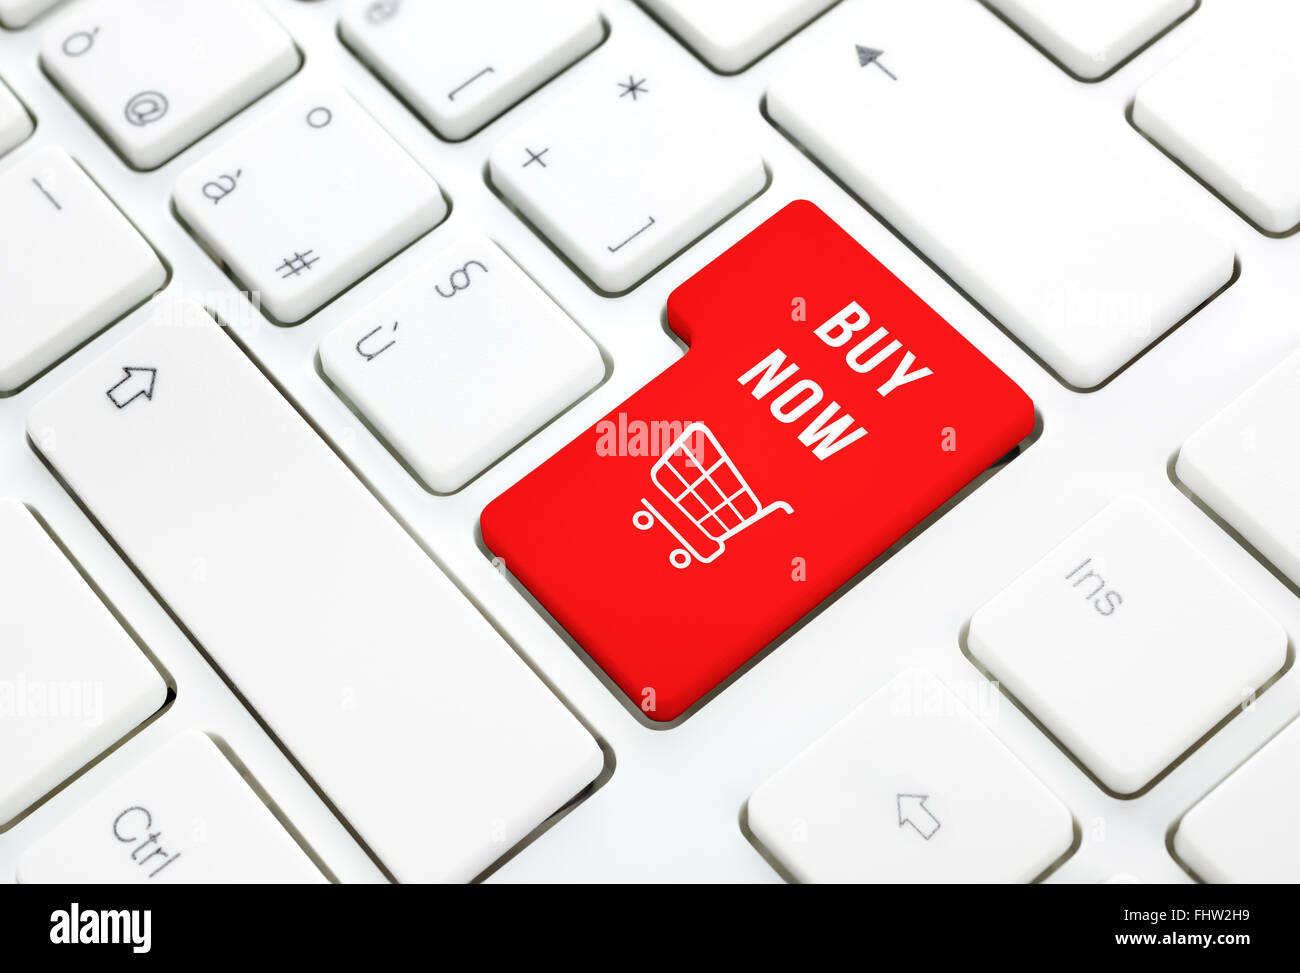 Online-Shop kaufen Sie jetzt Business-Konzept, rote Warenkorb-Button oder Schlüssel auf die weiße Tastatur Fotografie. Stockfoto